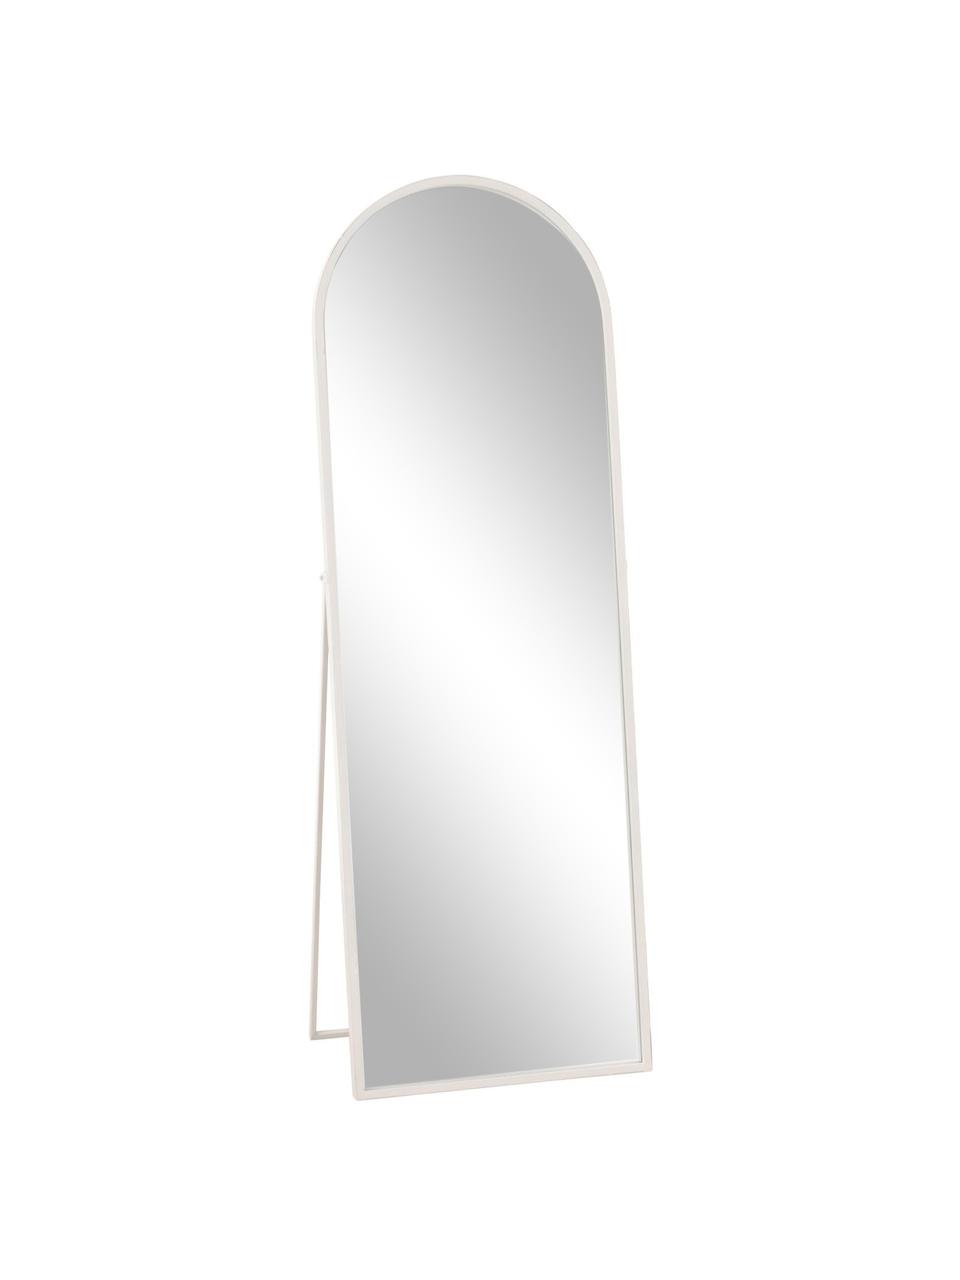 Standspiegel Espelho, Rahmen: Metall, beschichtet, Weiß, B 51 x H 148 cm